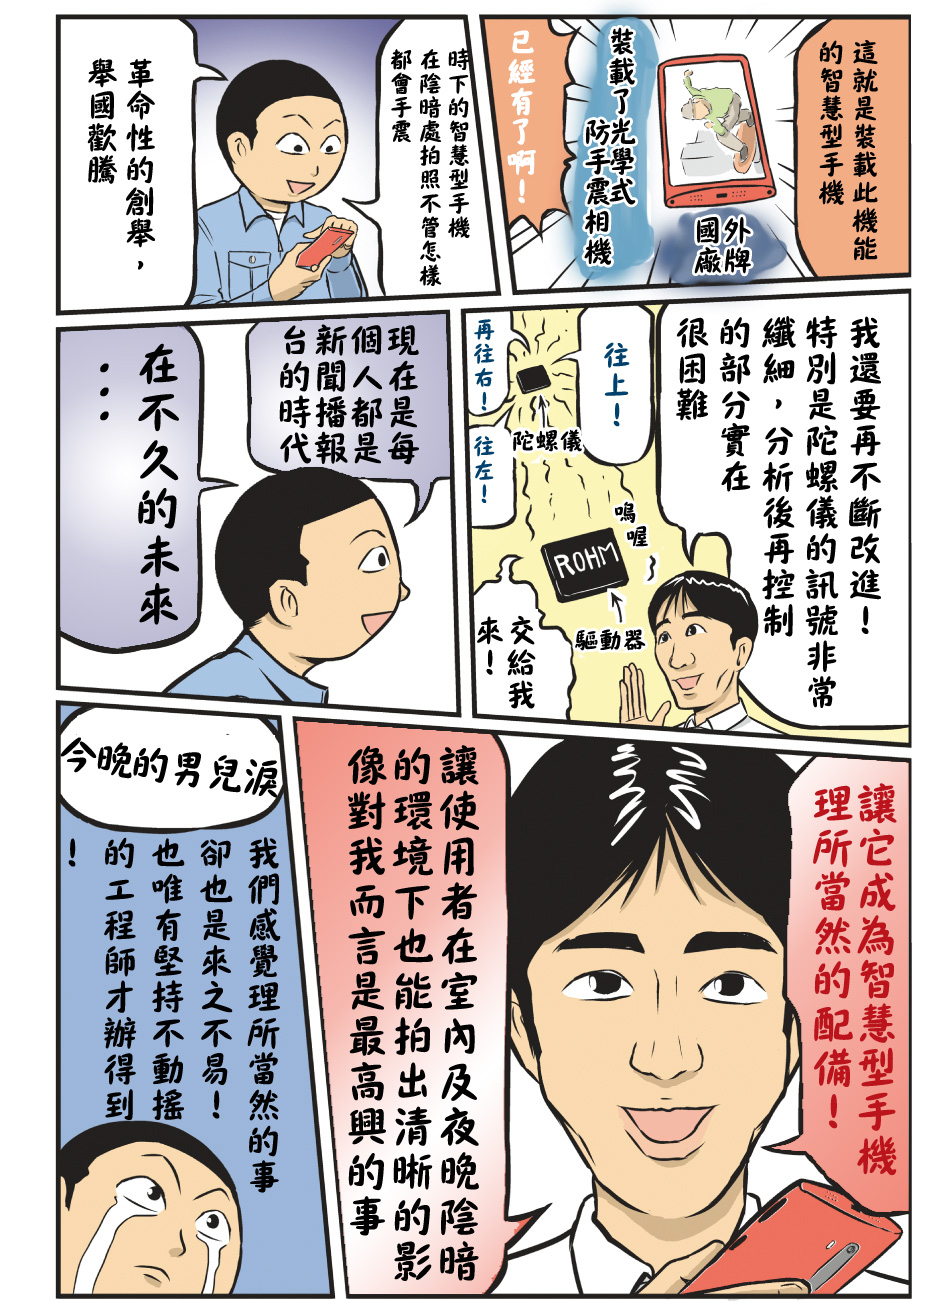 漫畫 為ROHM流下男兒淚!見野 榮司(MIRUNO EIJI) 3